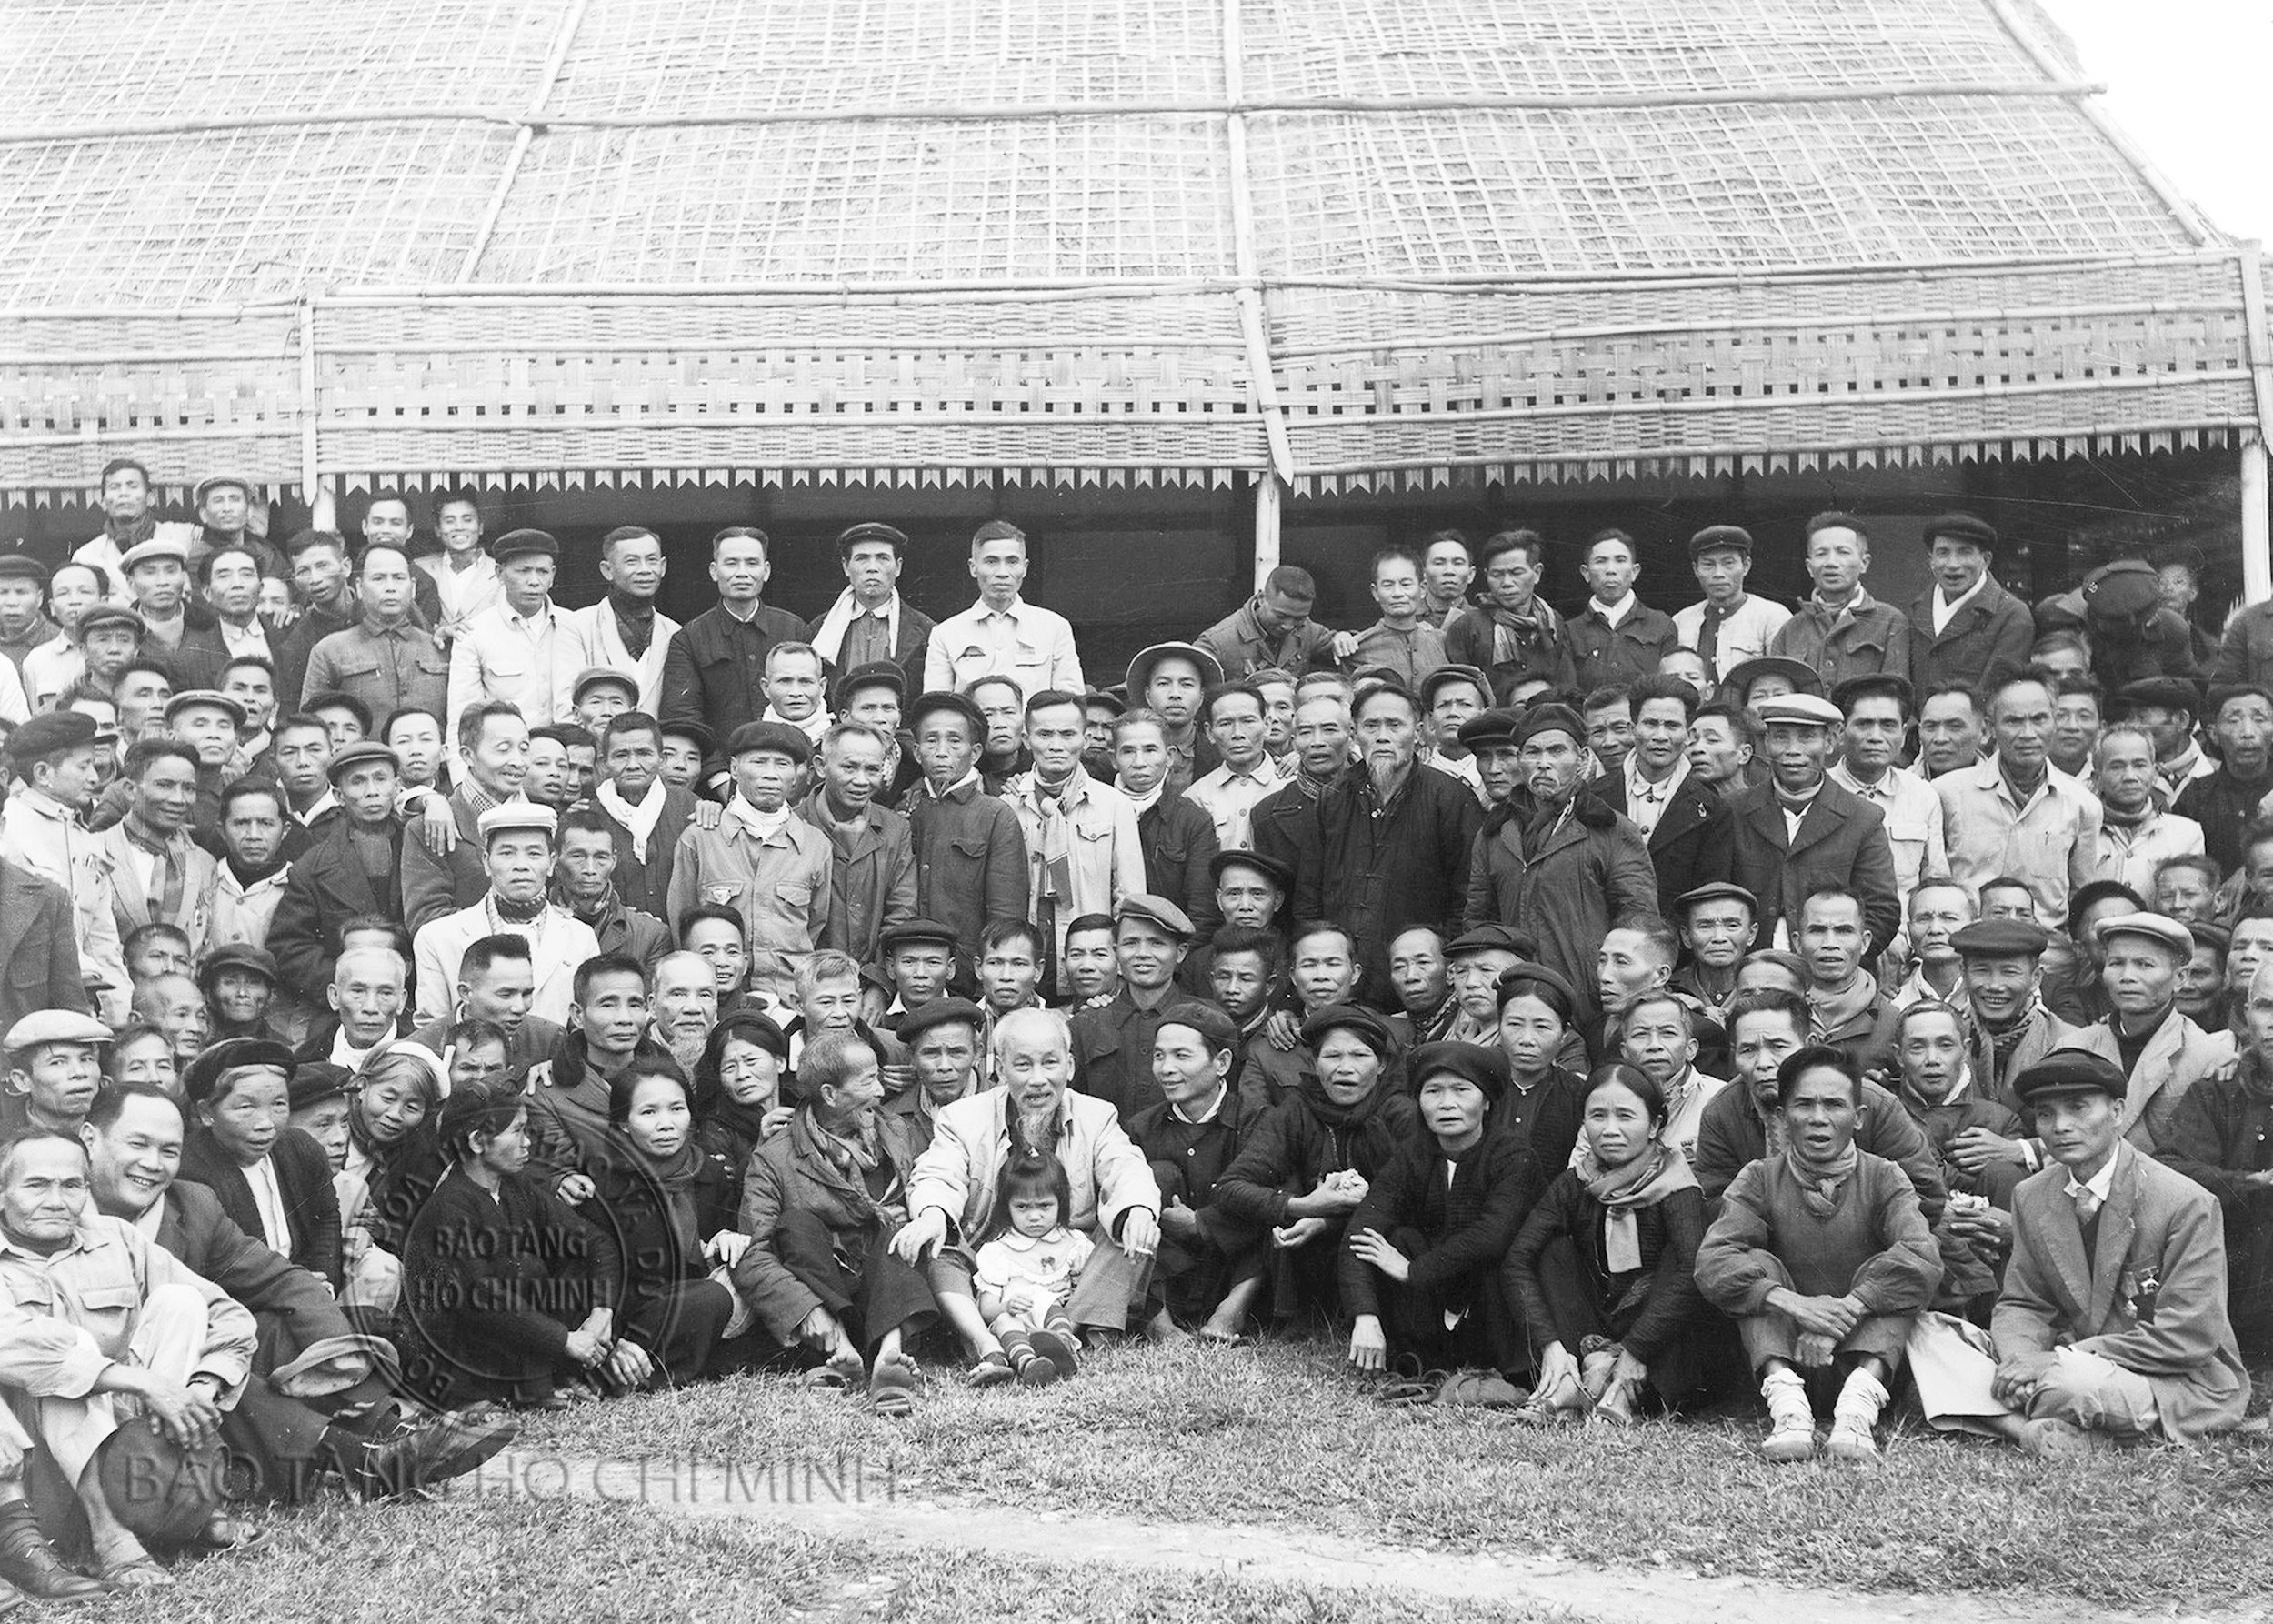 Chủ tịch Hồ Chí Minh gặp gỡ các lão thành cách mạng ngày 9/12/1961. Ảnh tư liệu: Khu Di tích Kim Liên